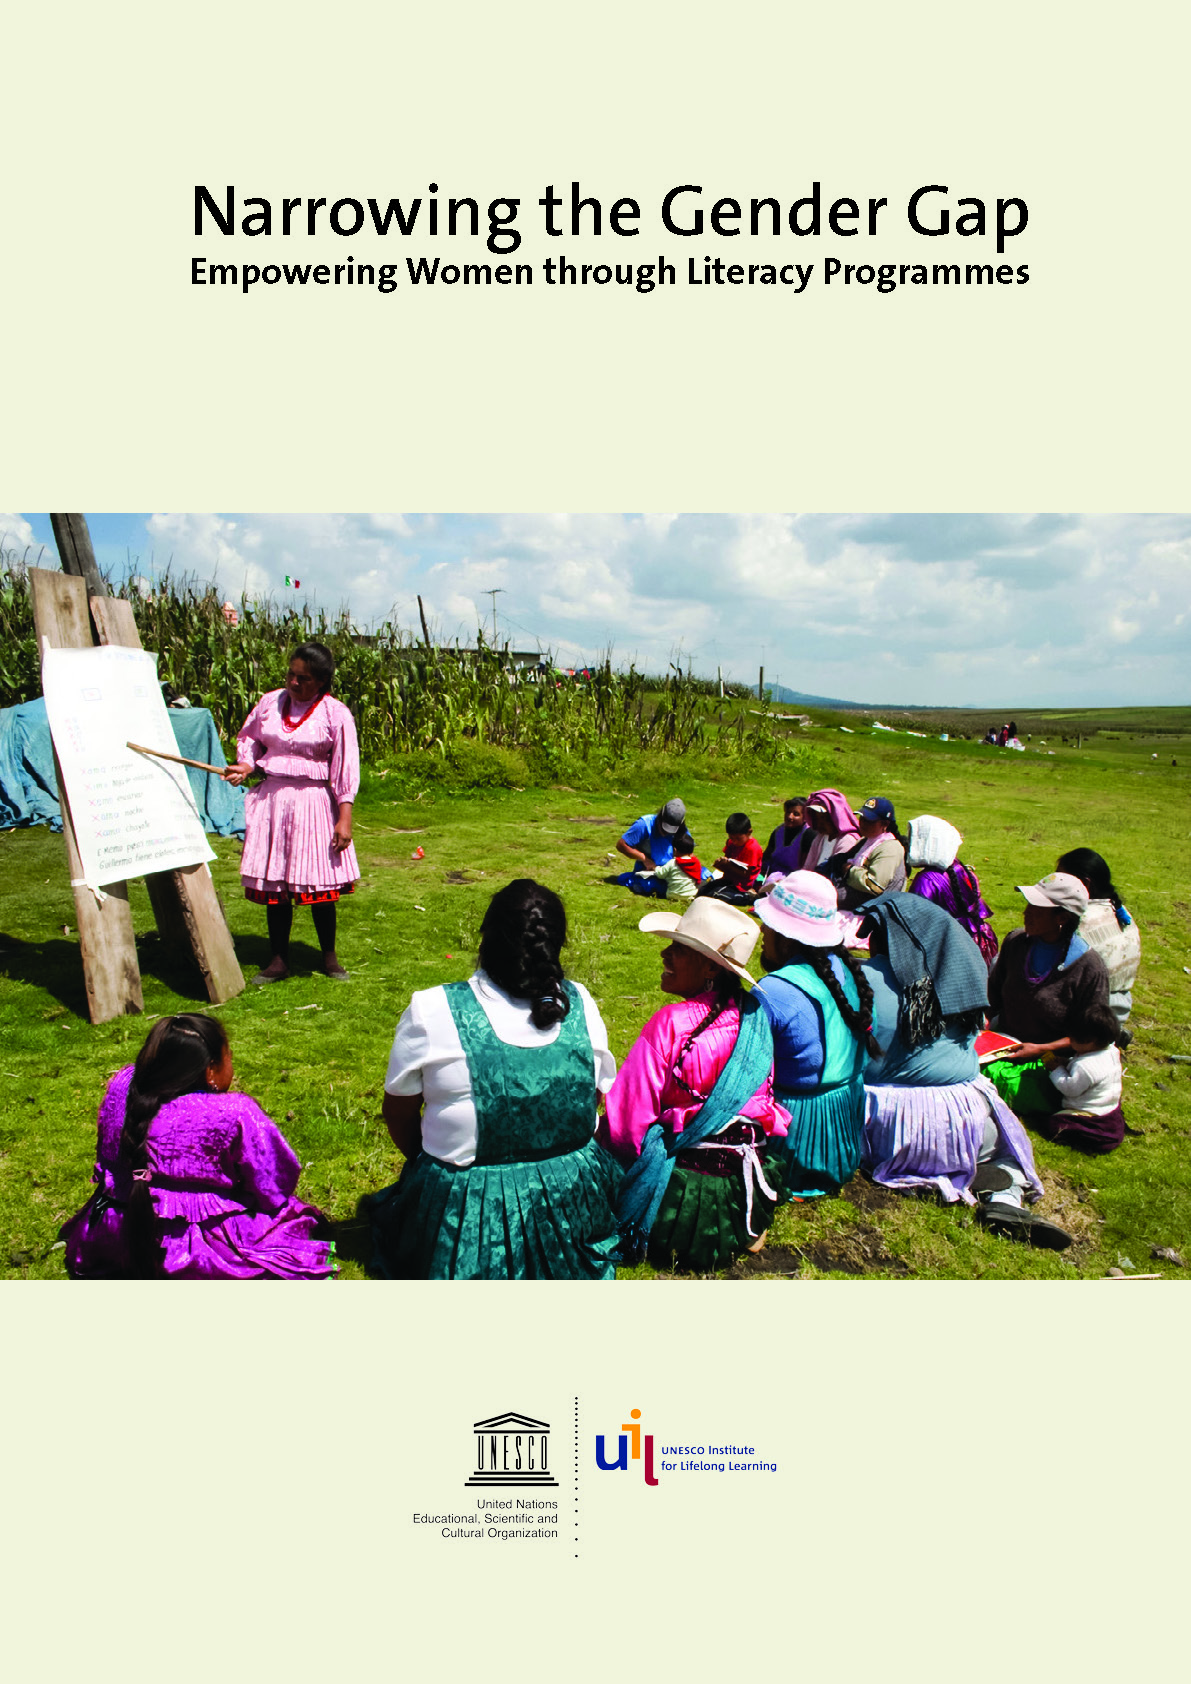 Narrowing the Gender Gap: Empowering Women through Literacy Programmes